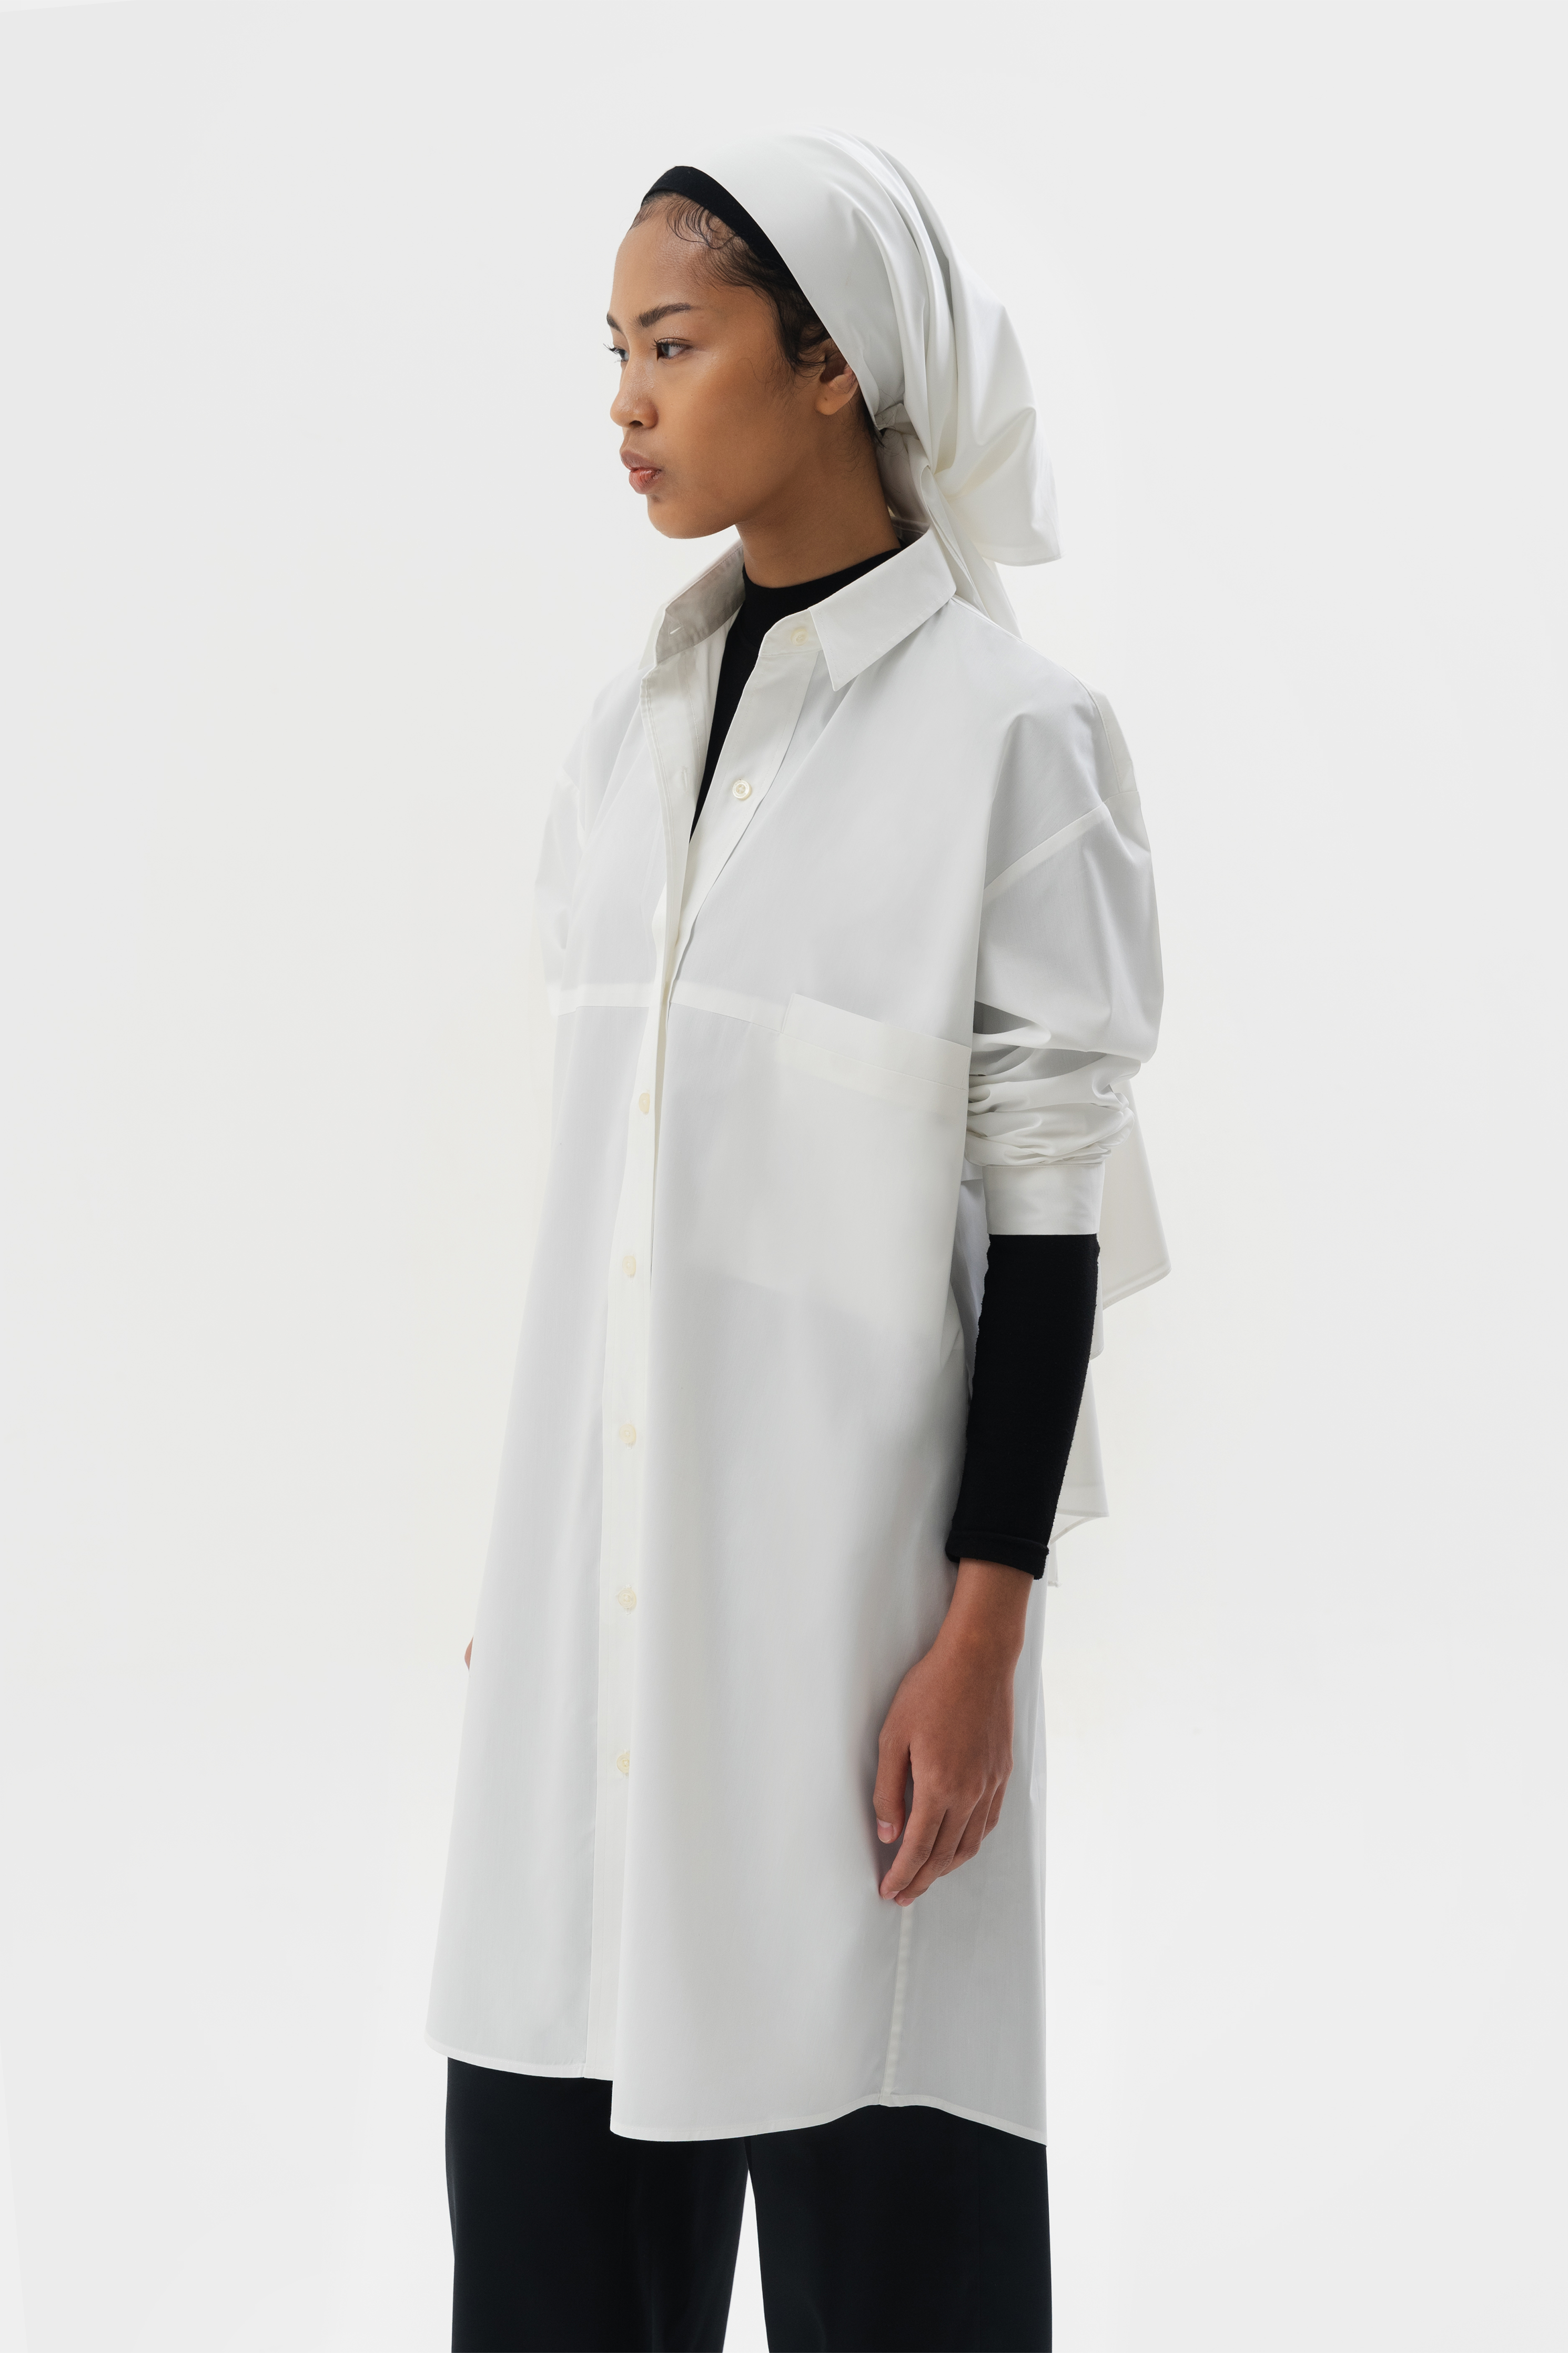 AITOCHI DRESS - White